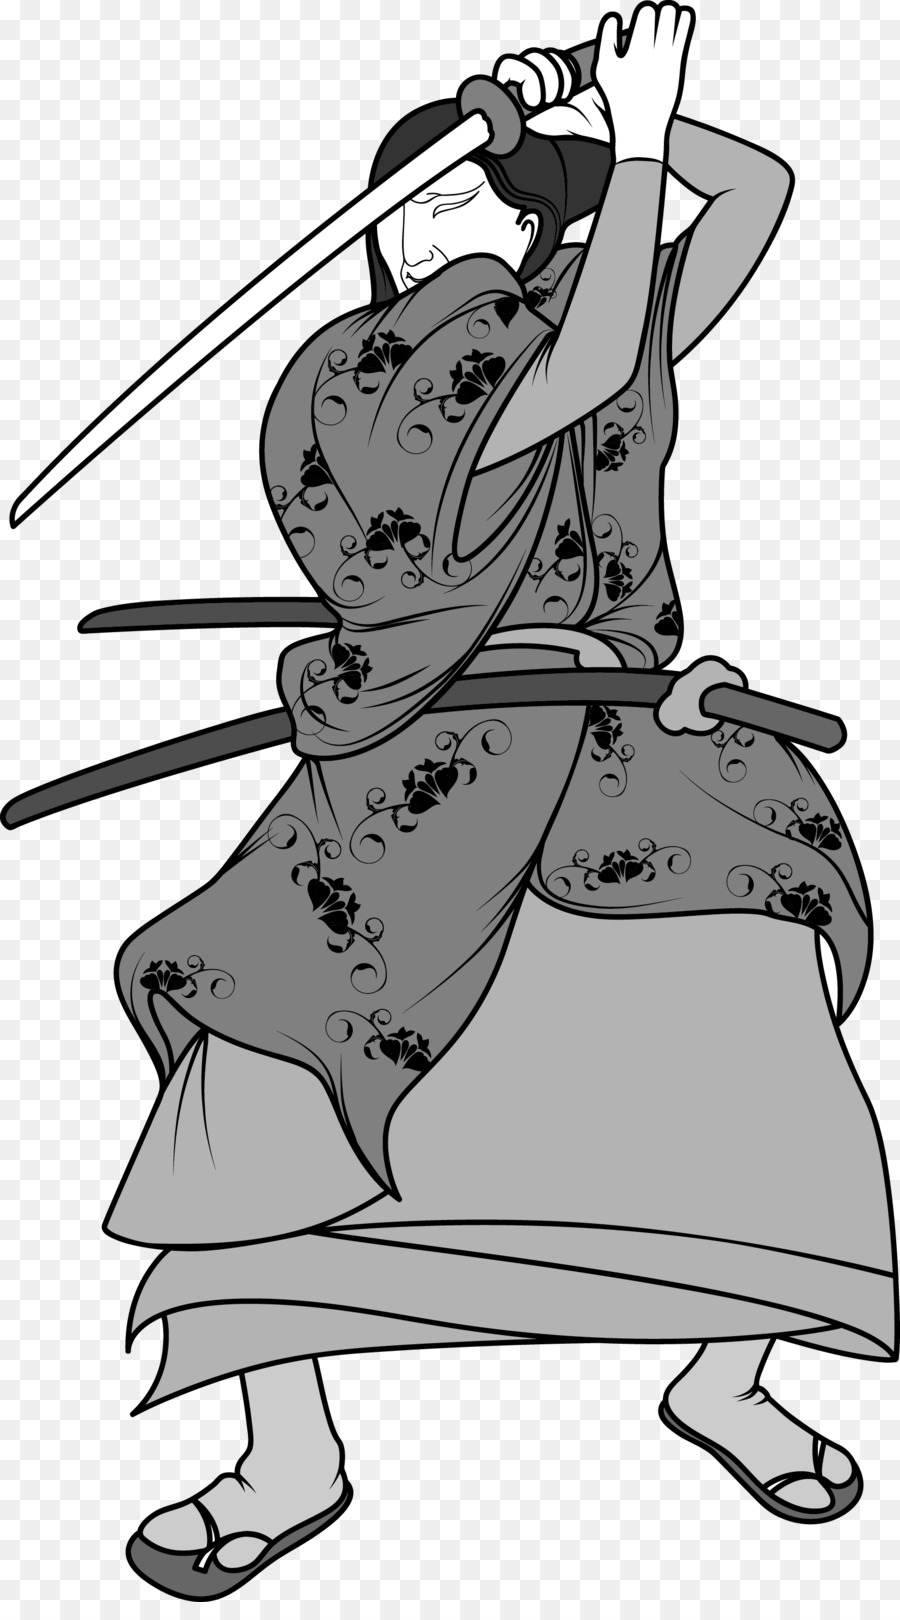 Đen và trắng chiến Binh Vẽ Clip nghệ thuật - Nhật bản, ninja vệ sĩ chiến binh da đen và trắng hình ảnh